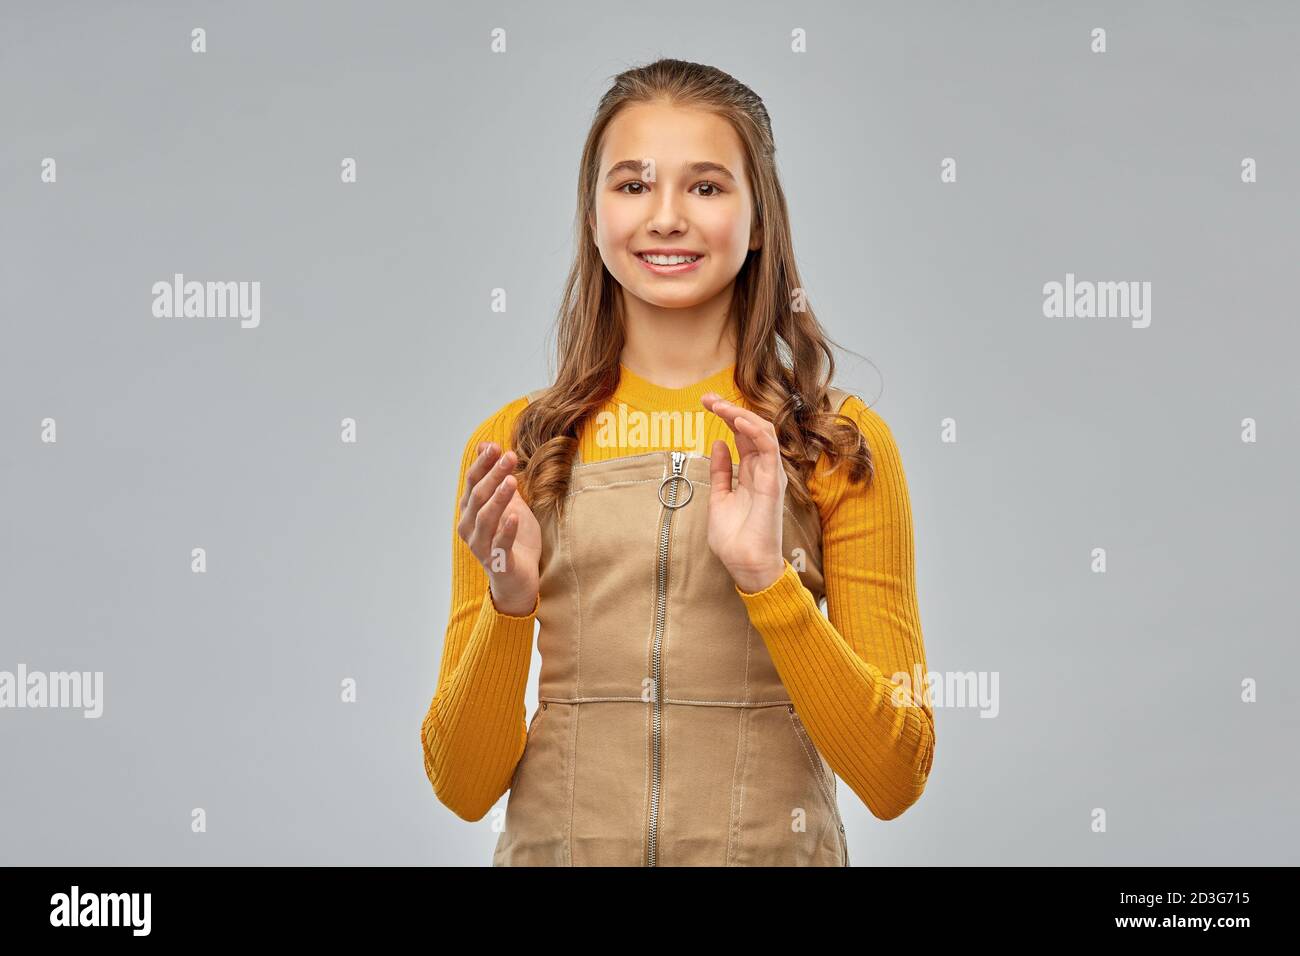 sorridente ragazza adolescente applaudendo su sfondo grigio Foto Stock